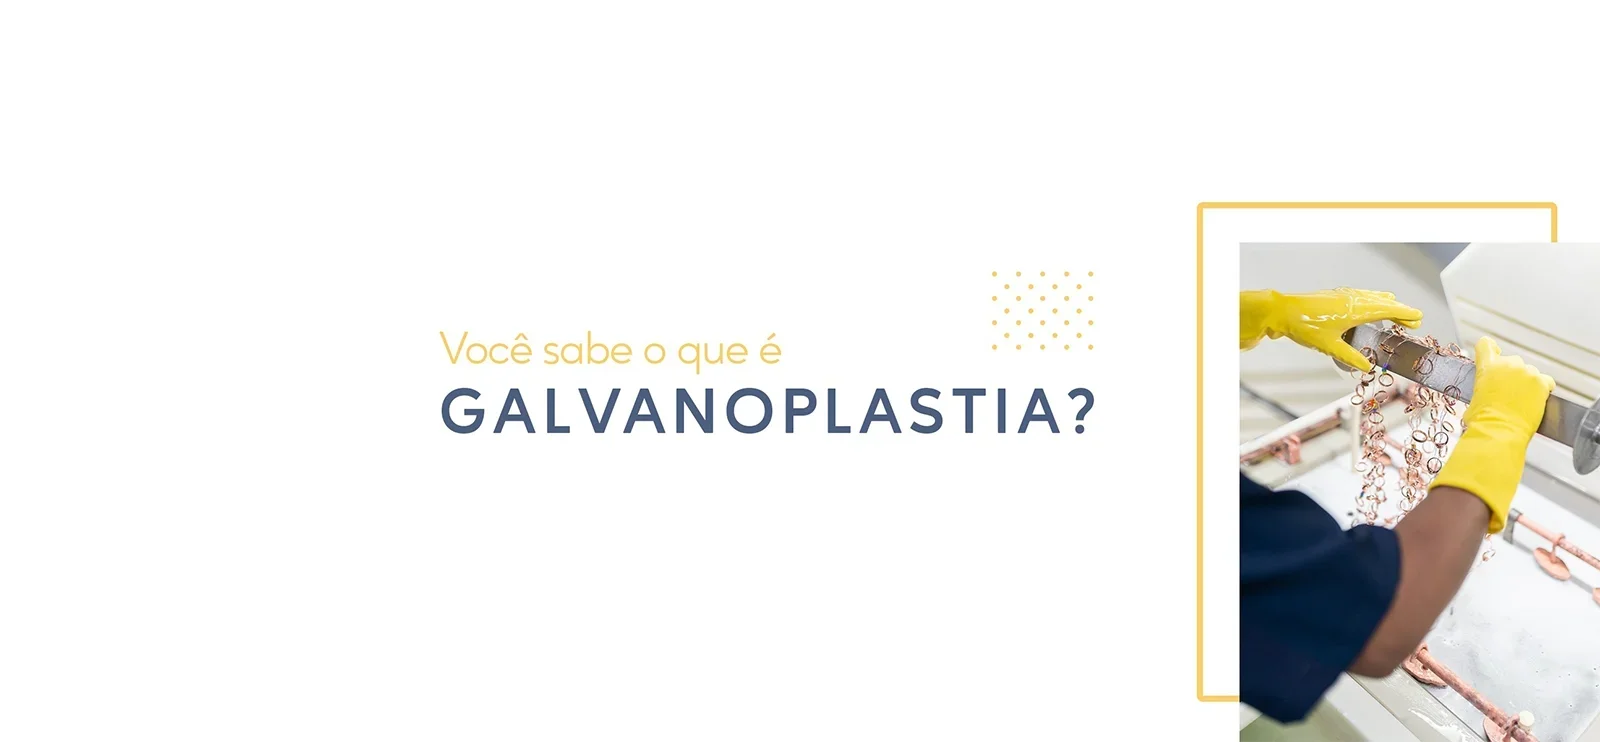 Você sabe o que é galvanoplastia?